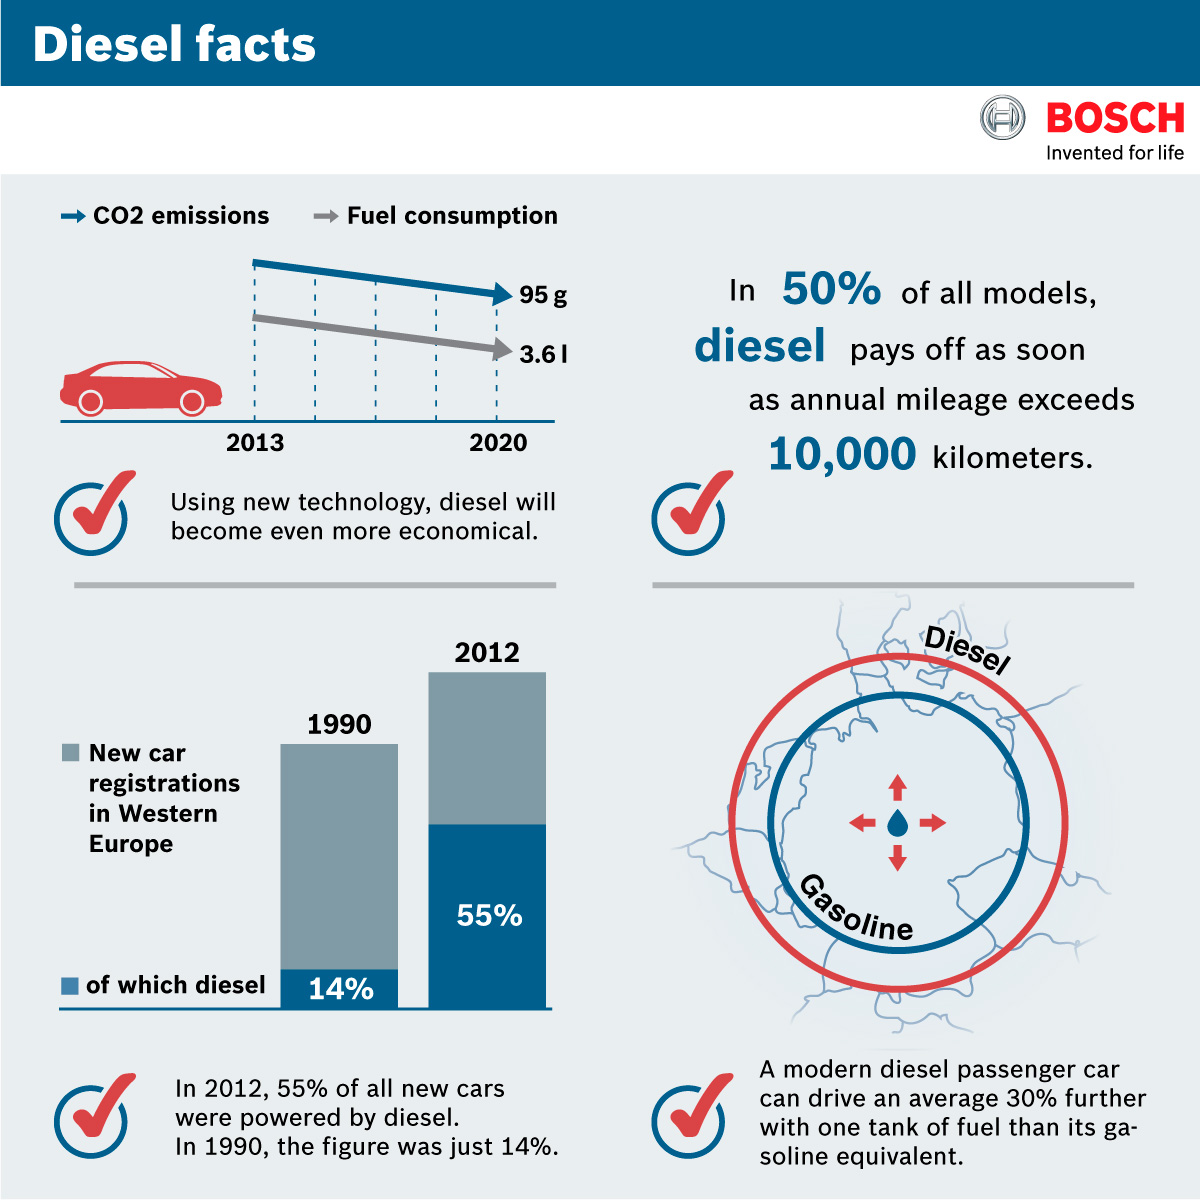 Diesel facts